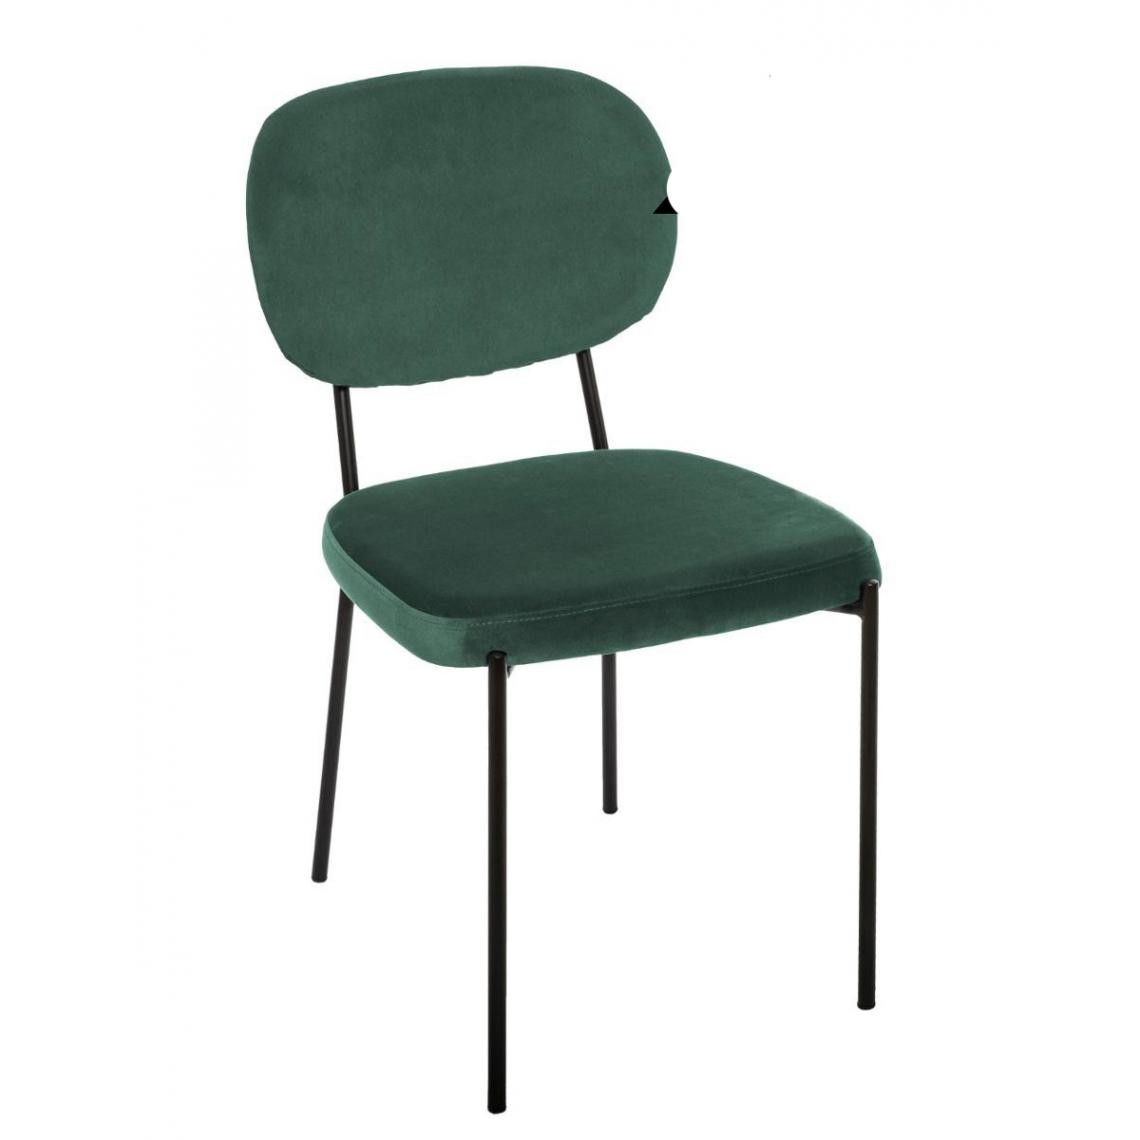 Pegane - Lot de 4 chaises coloris Vert en velours - L. 46 x l. 56 x H. 82 cm - Chaises